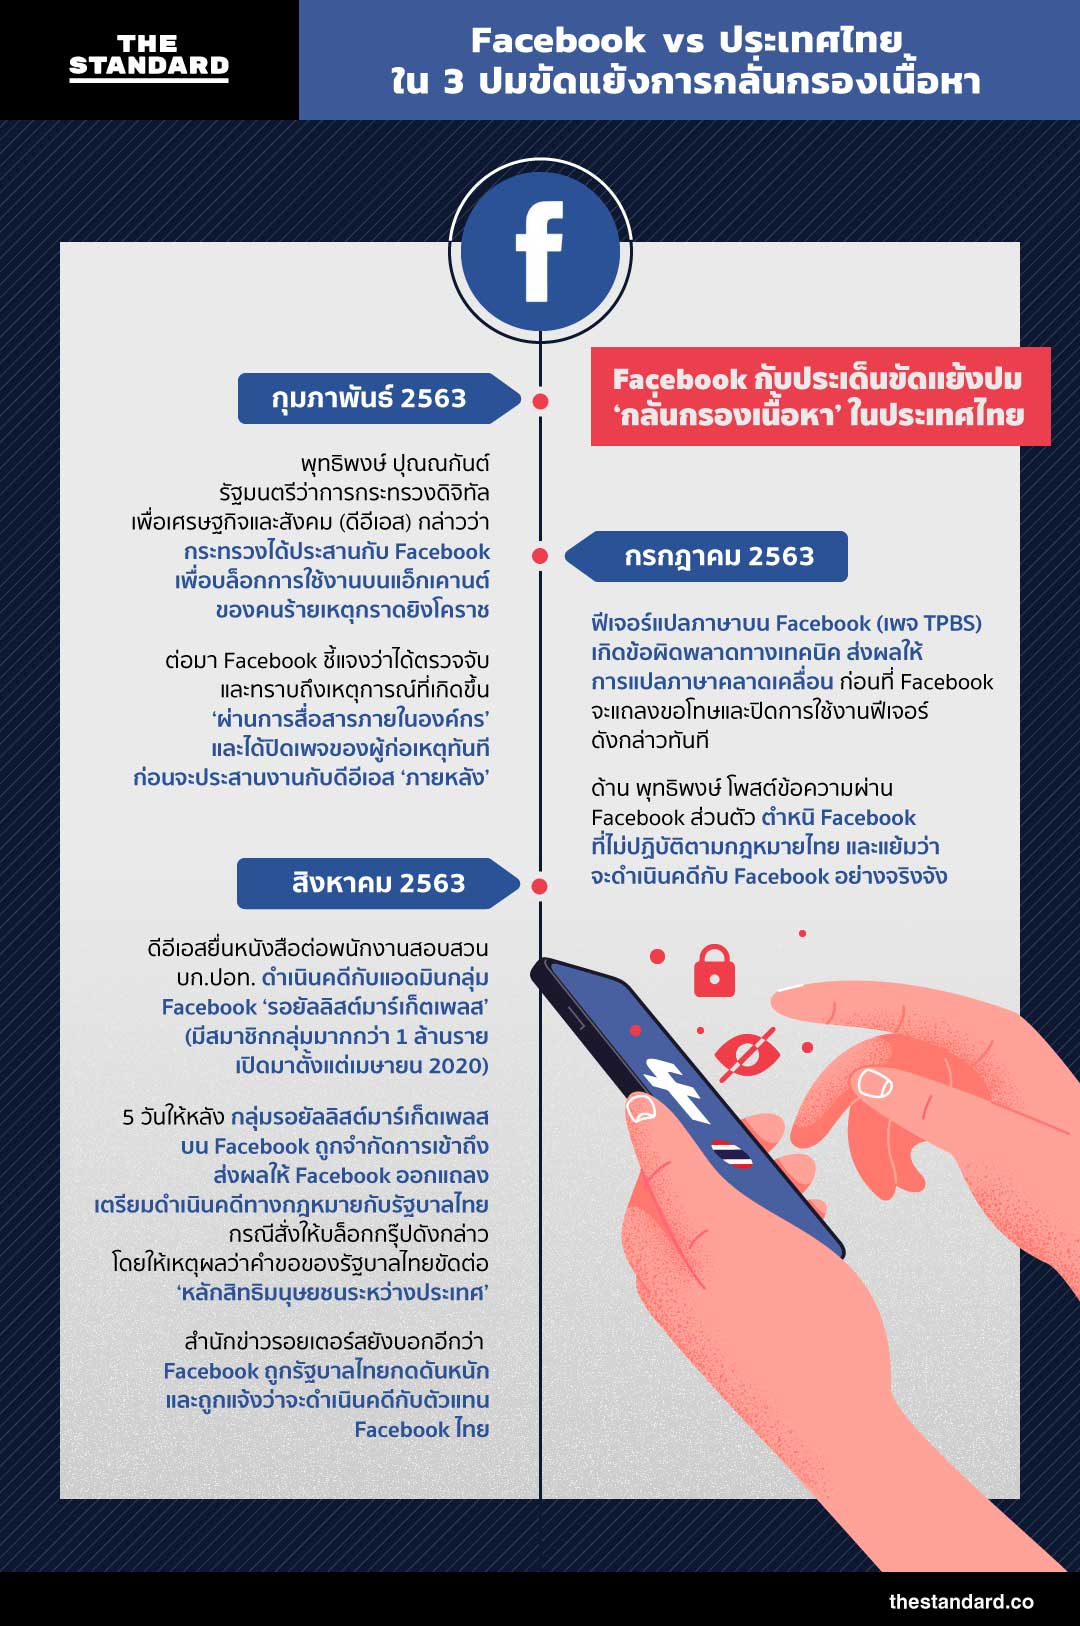 facebook ประเทศไทย การกลั่นกรองเนื้อหา infographic อินโฟกราฟฟิก timeline